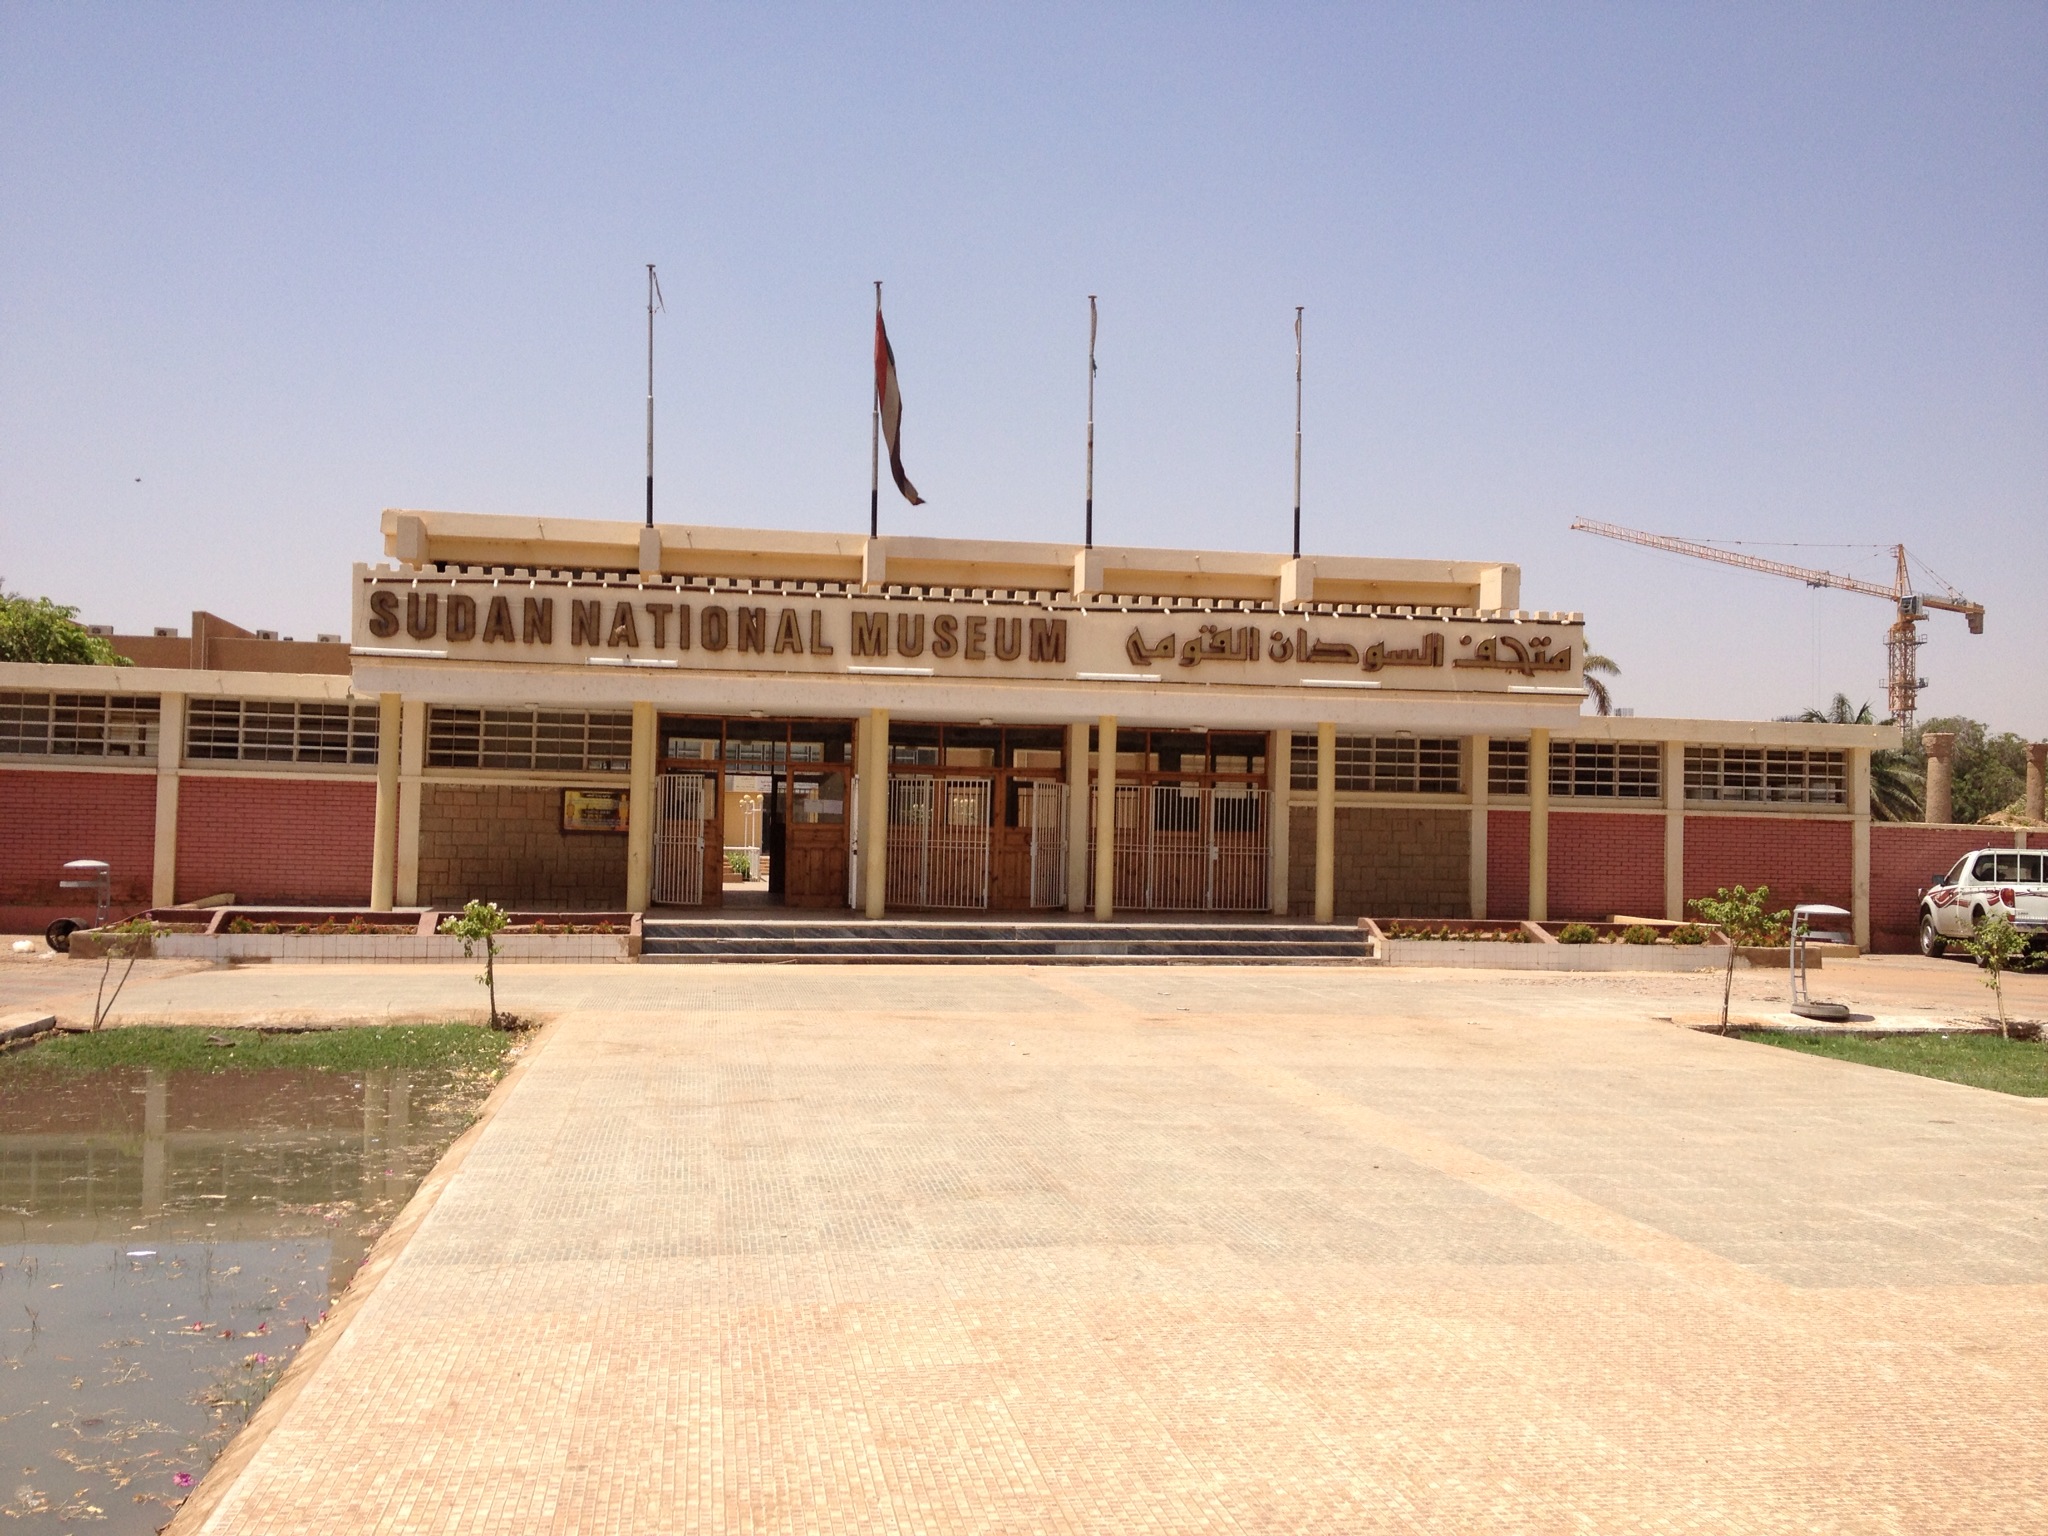 SUDAN NATIONAL MUSEUM